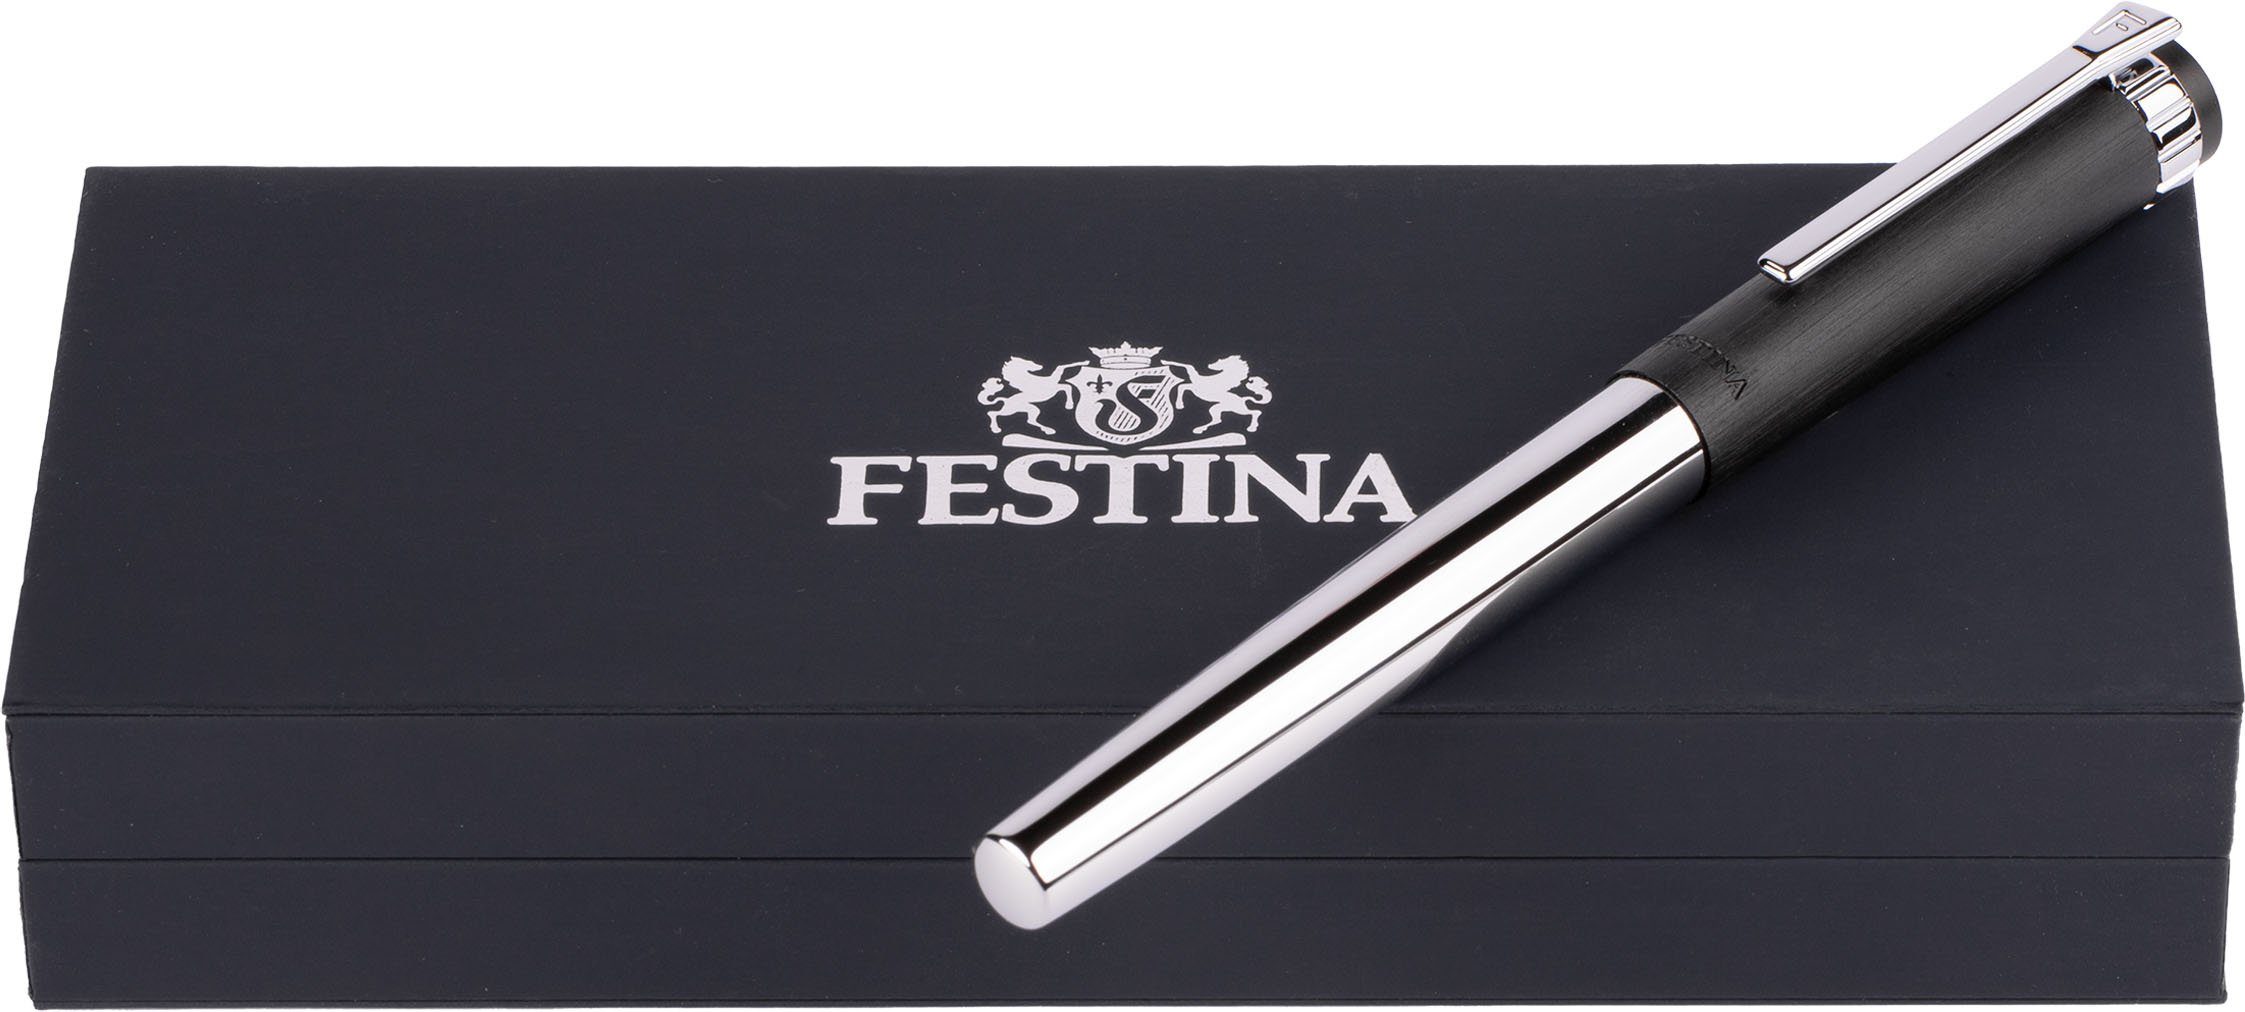 Festina Tintenroller Prestige, FWS5109/A, inklusive Etui, Geschenk ideal als auch